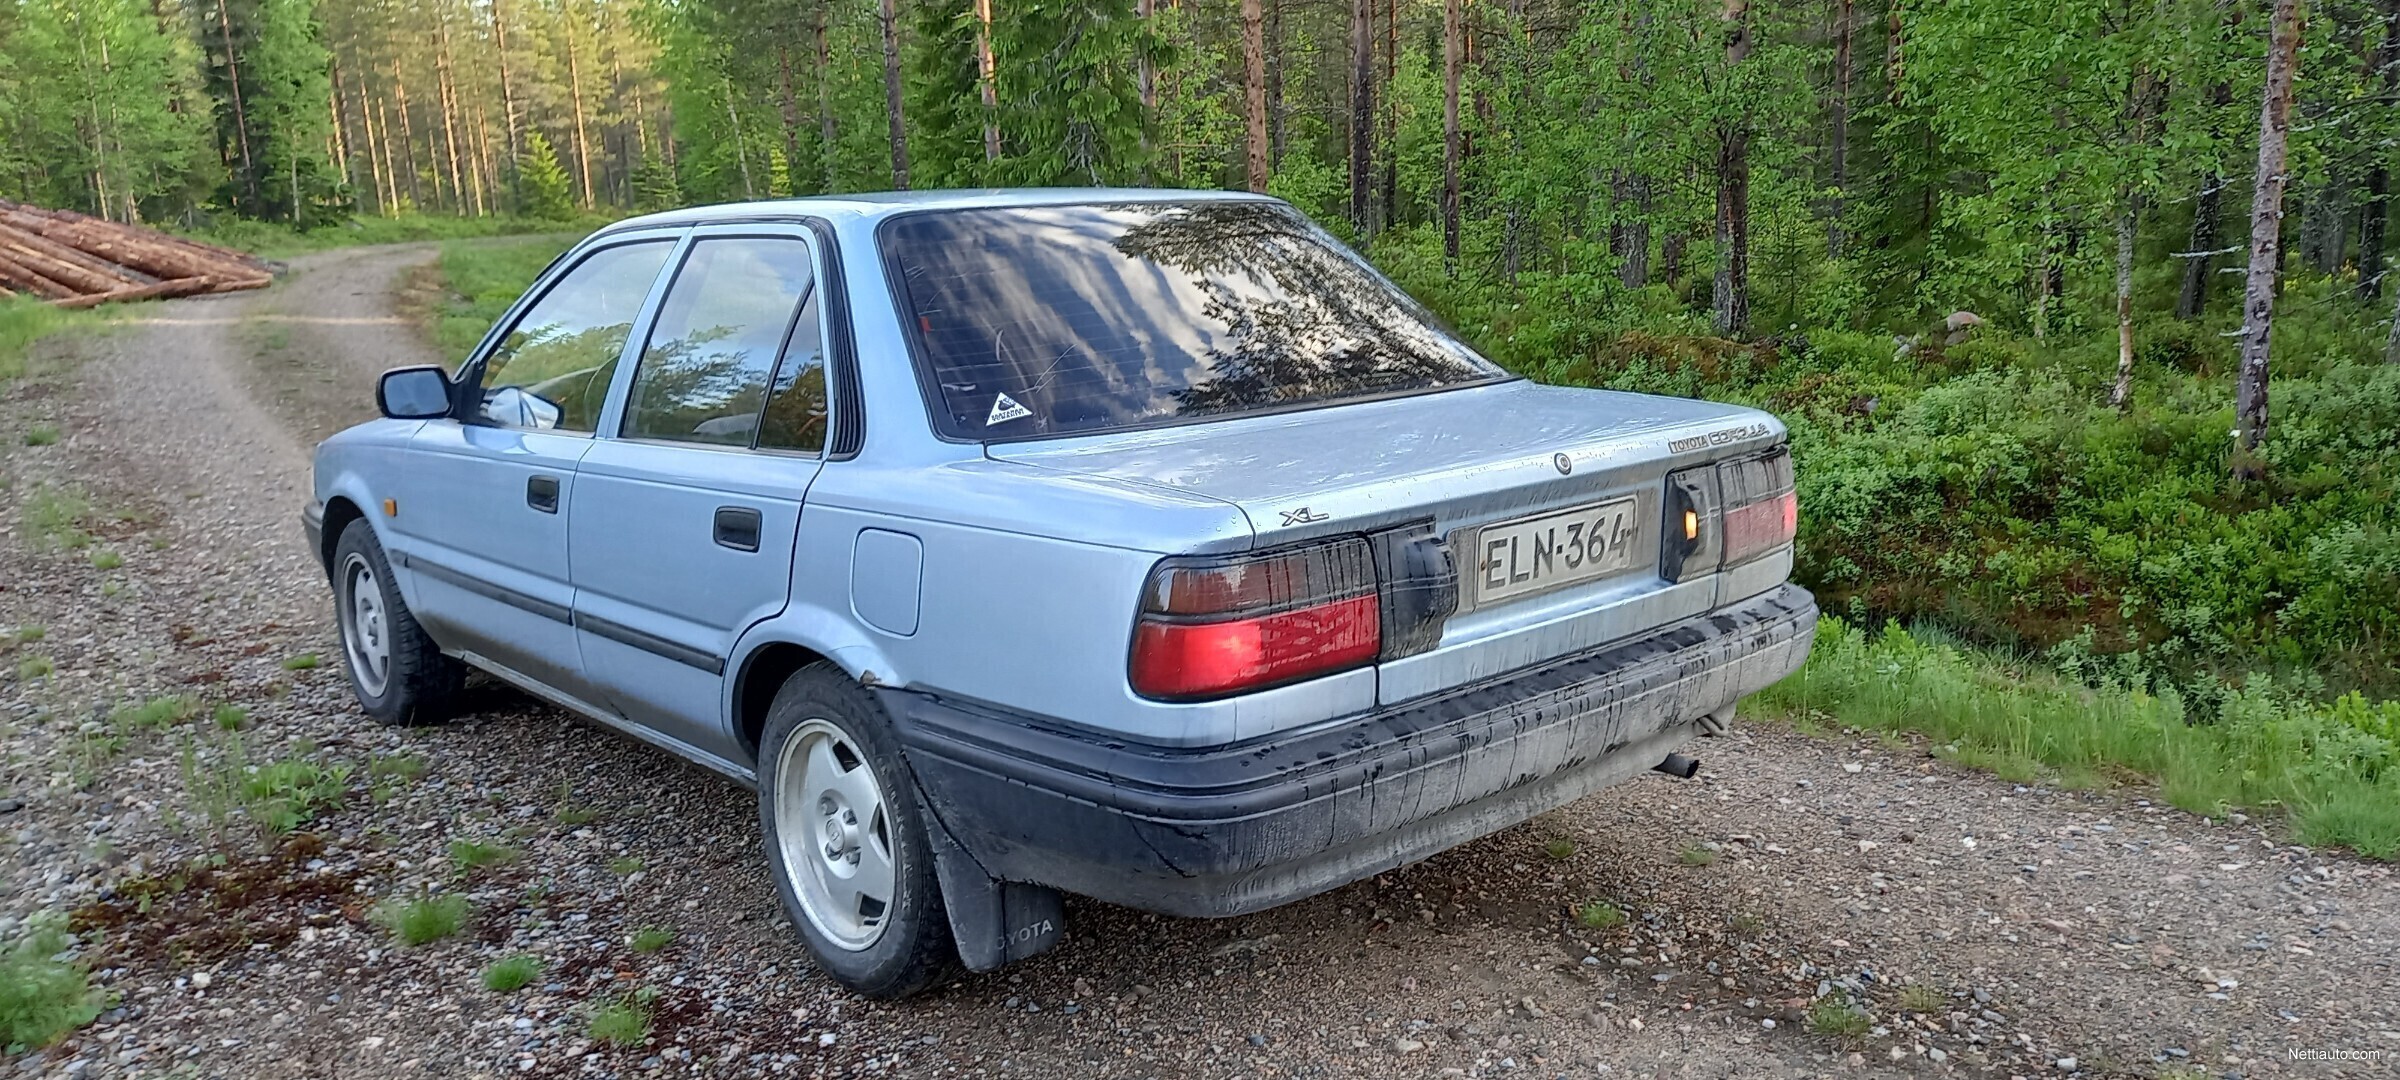 Toyota Corolla 1.3 XL 4d Porrasperä 1989 - Vaihtoauto - Nettiauto